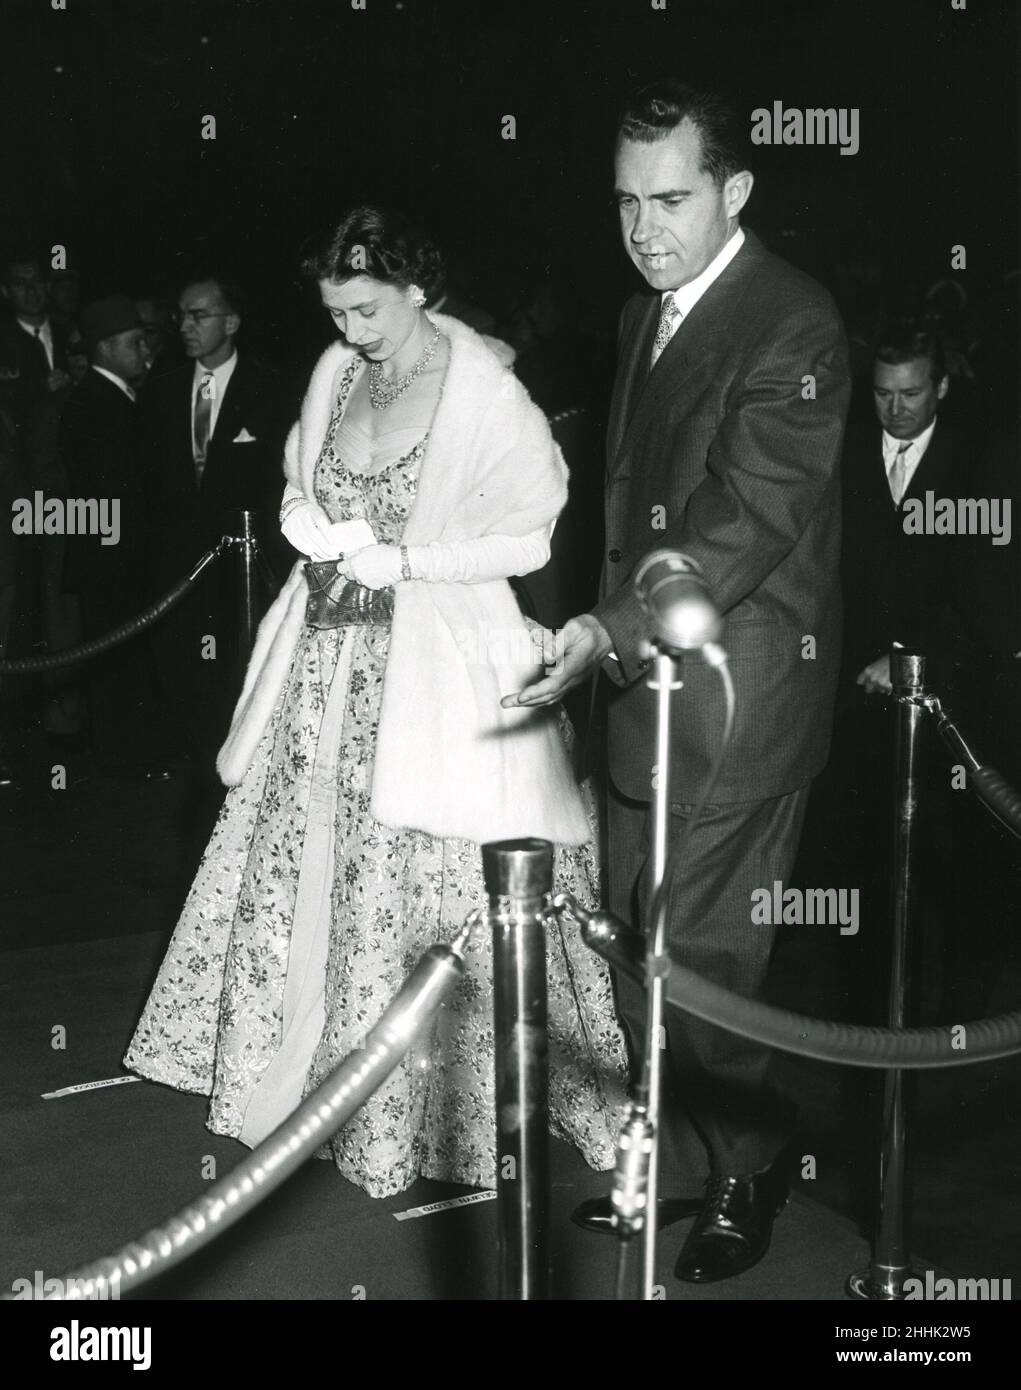 20 ottobre 1957 -- la Regina Elisabetta II scortata dal Vicepresidente Richard Nixon durante la sua visita di stato negli Stati Uniti. Foto: Abbie Rowe Foto Stock